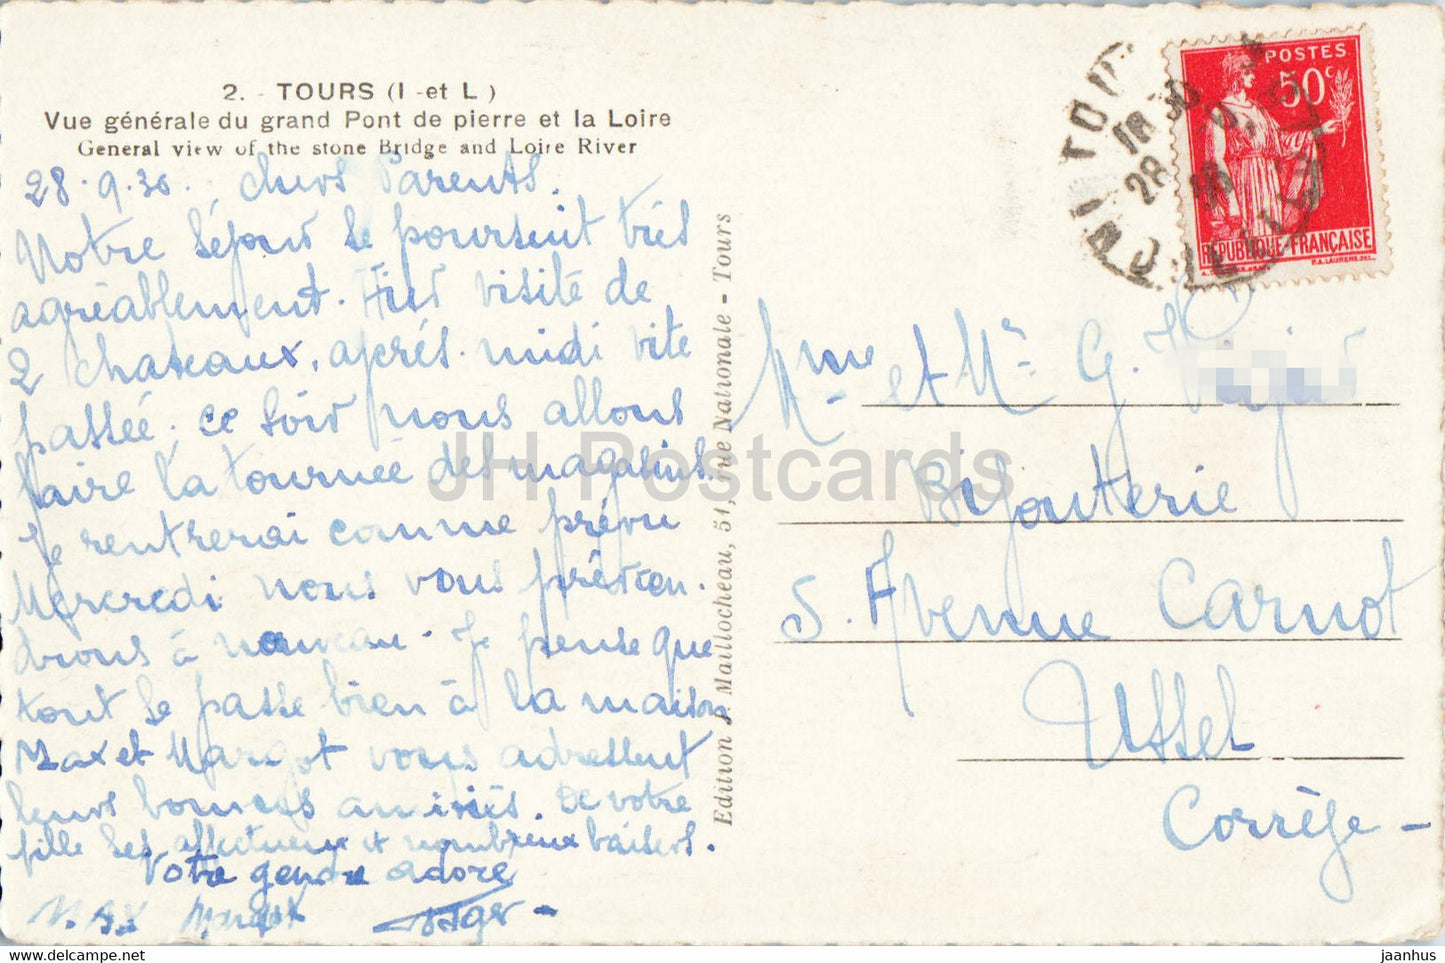 Tours - Vue Generale du grand Pont de pierre et la Loire - bridge - 2 - old postcard - 1936 - France - used